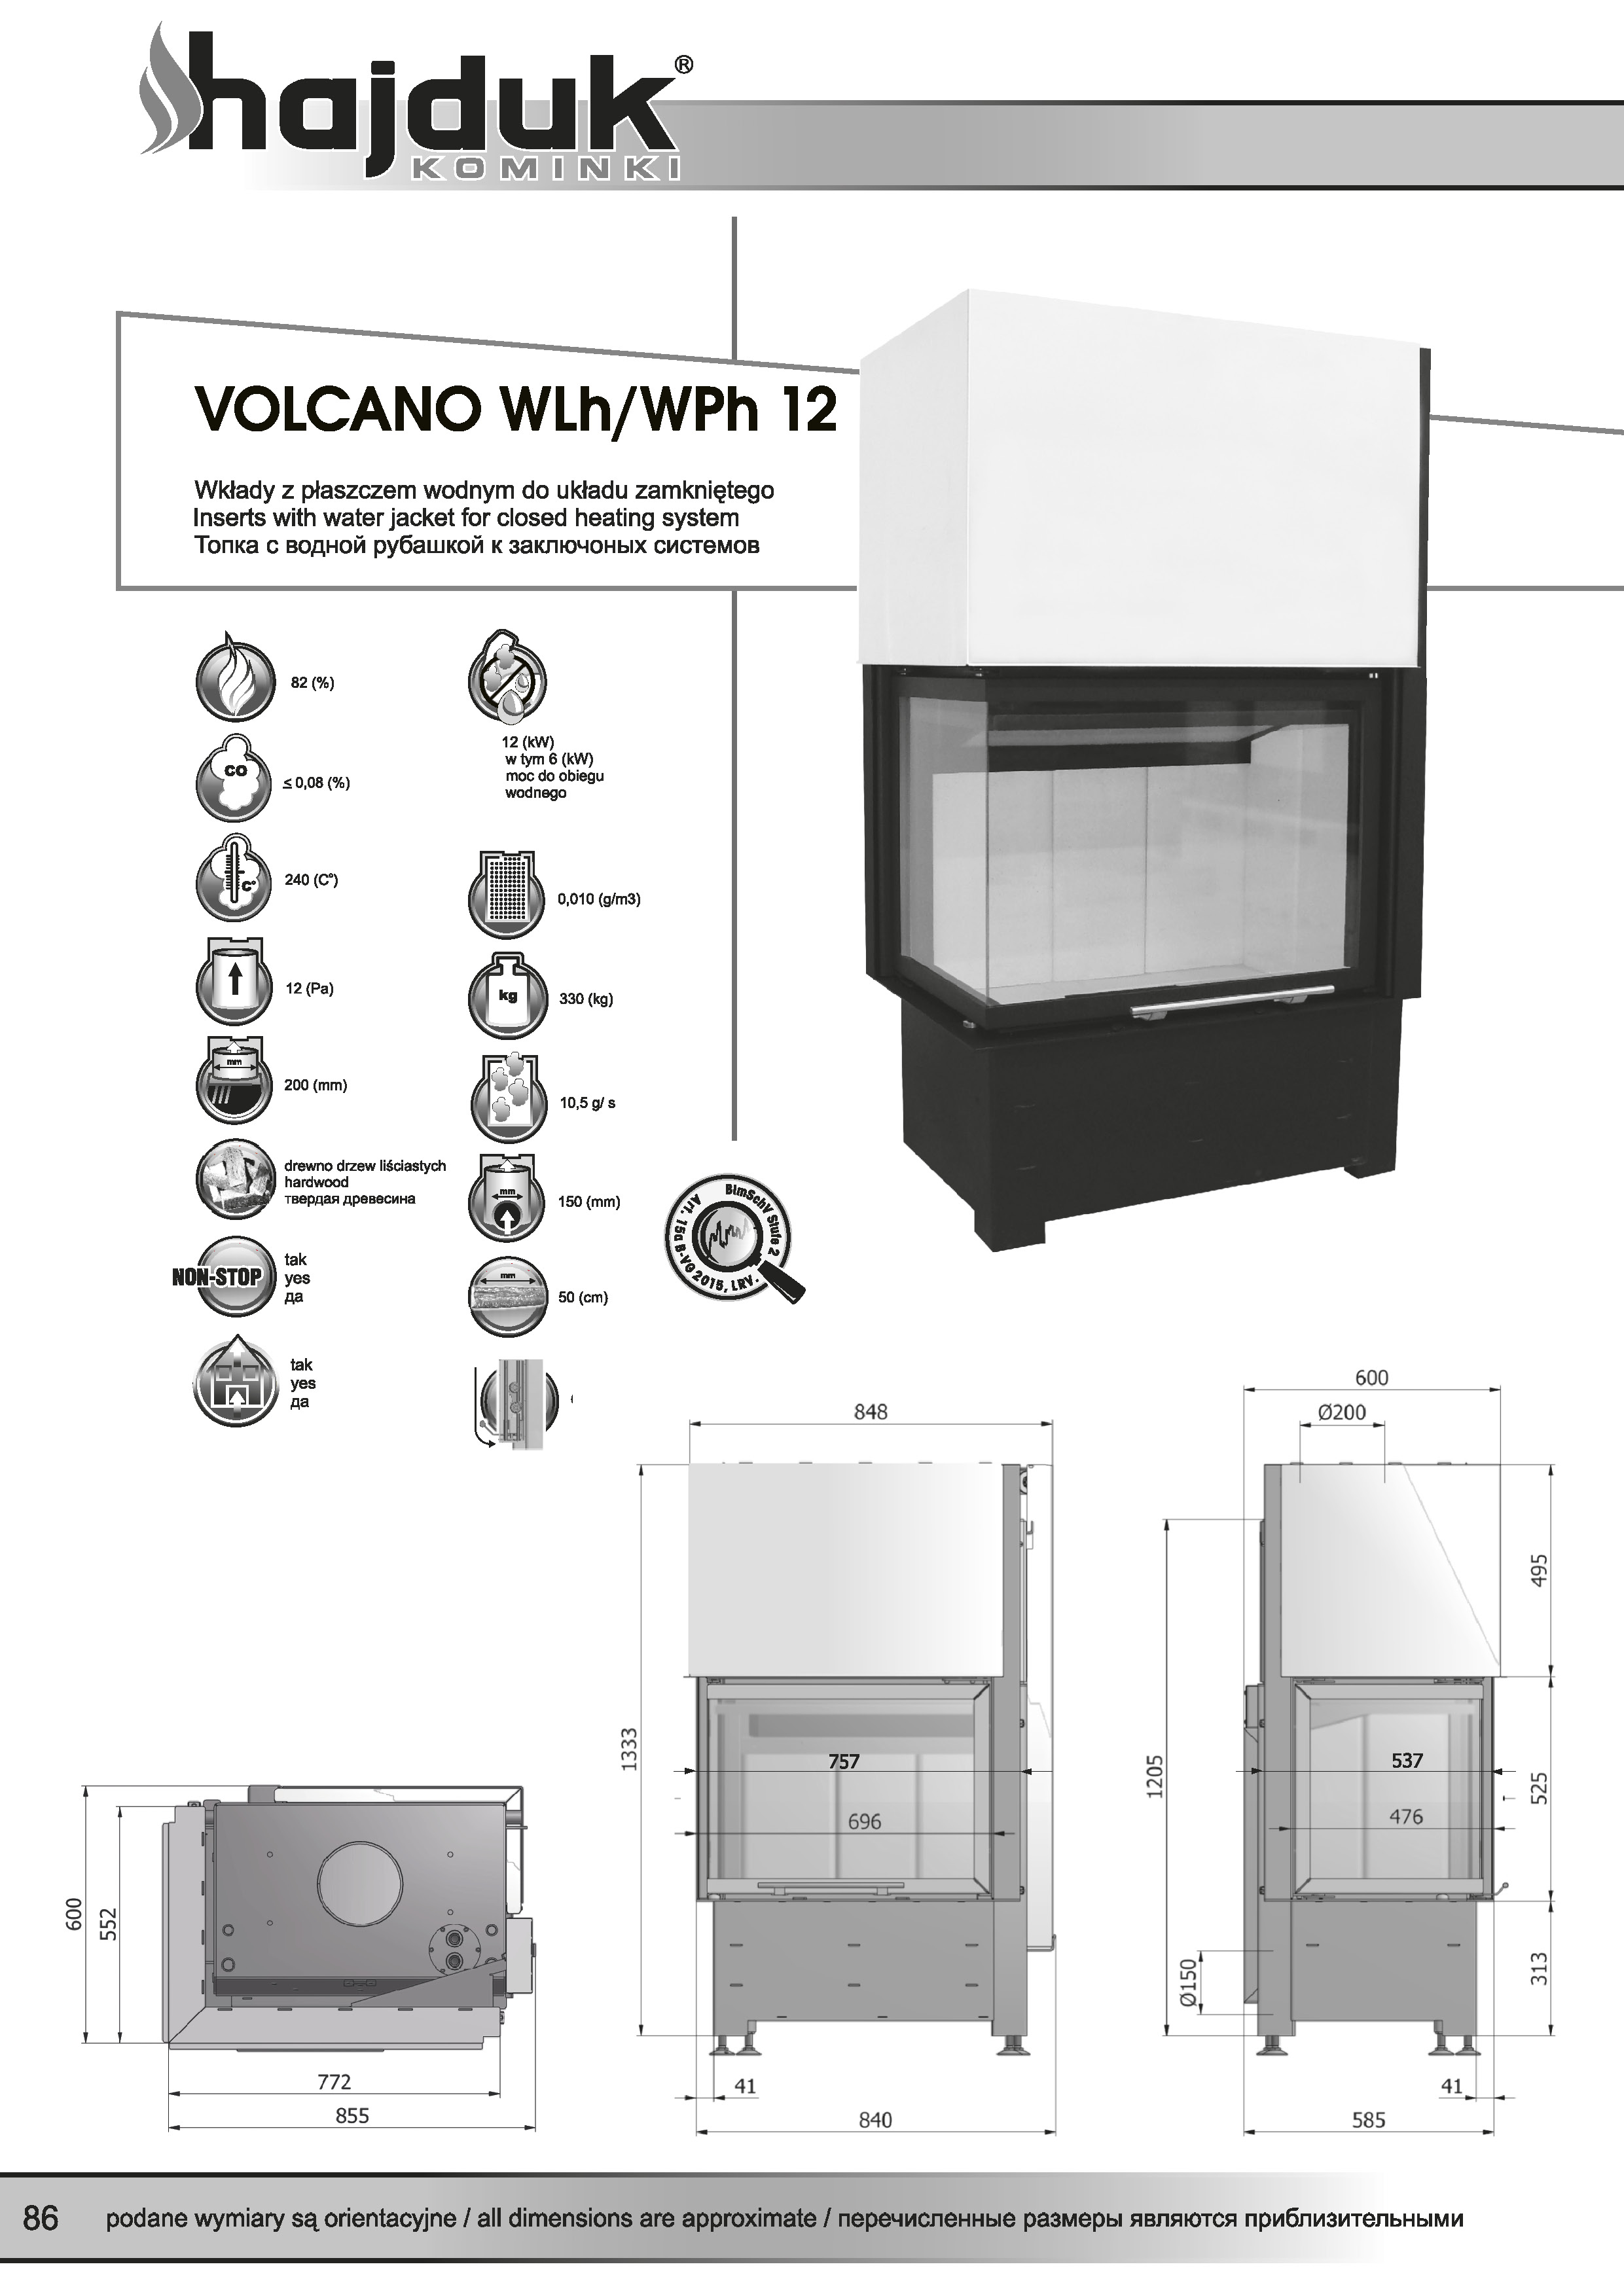 Volcano%20WLh%20WPh%20 %2012%20 %20karta%20techniczna - Hajduk  Volcano WLh 12